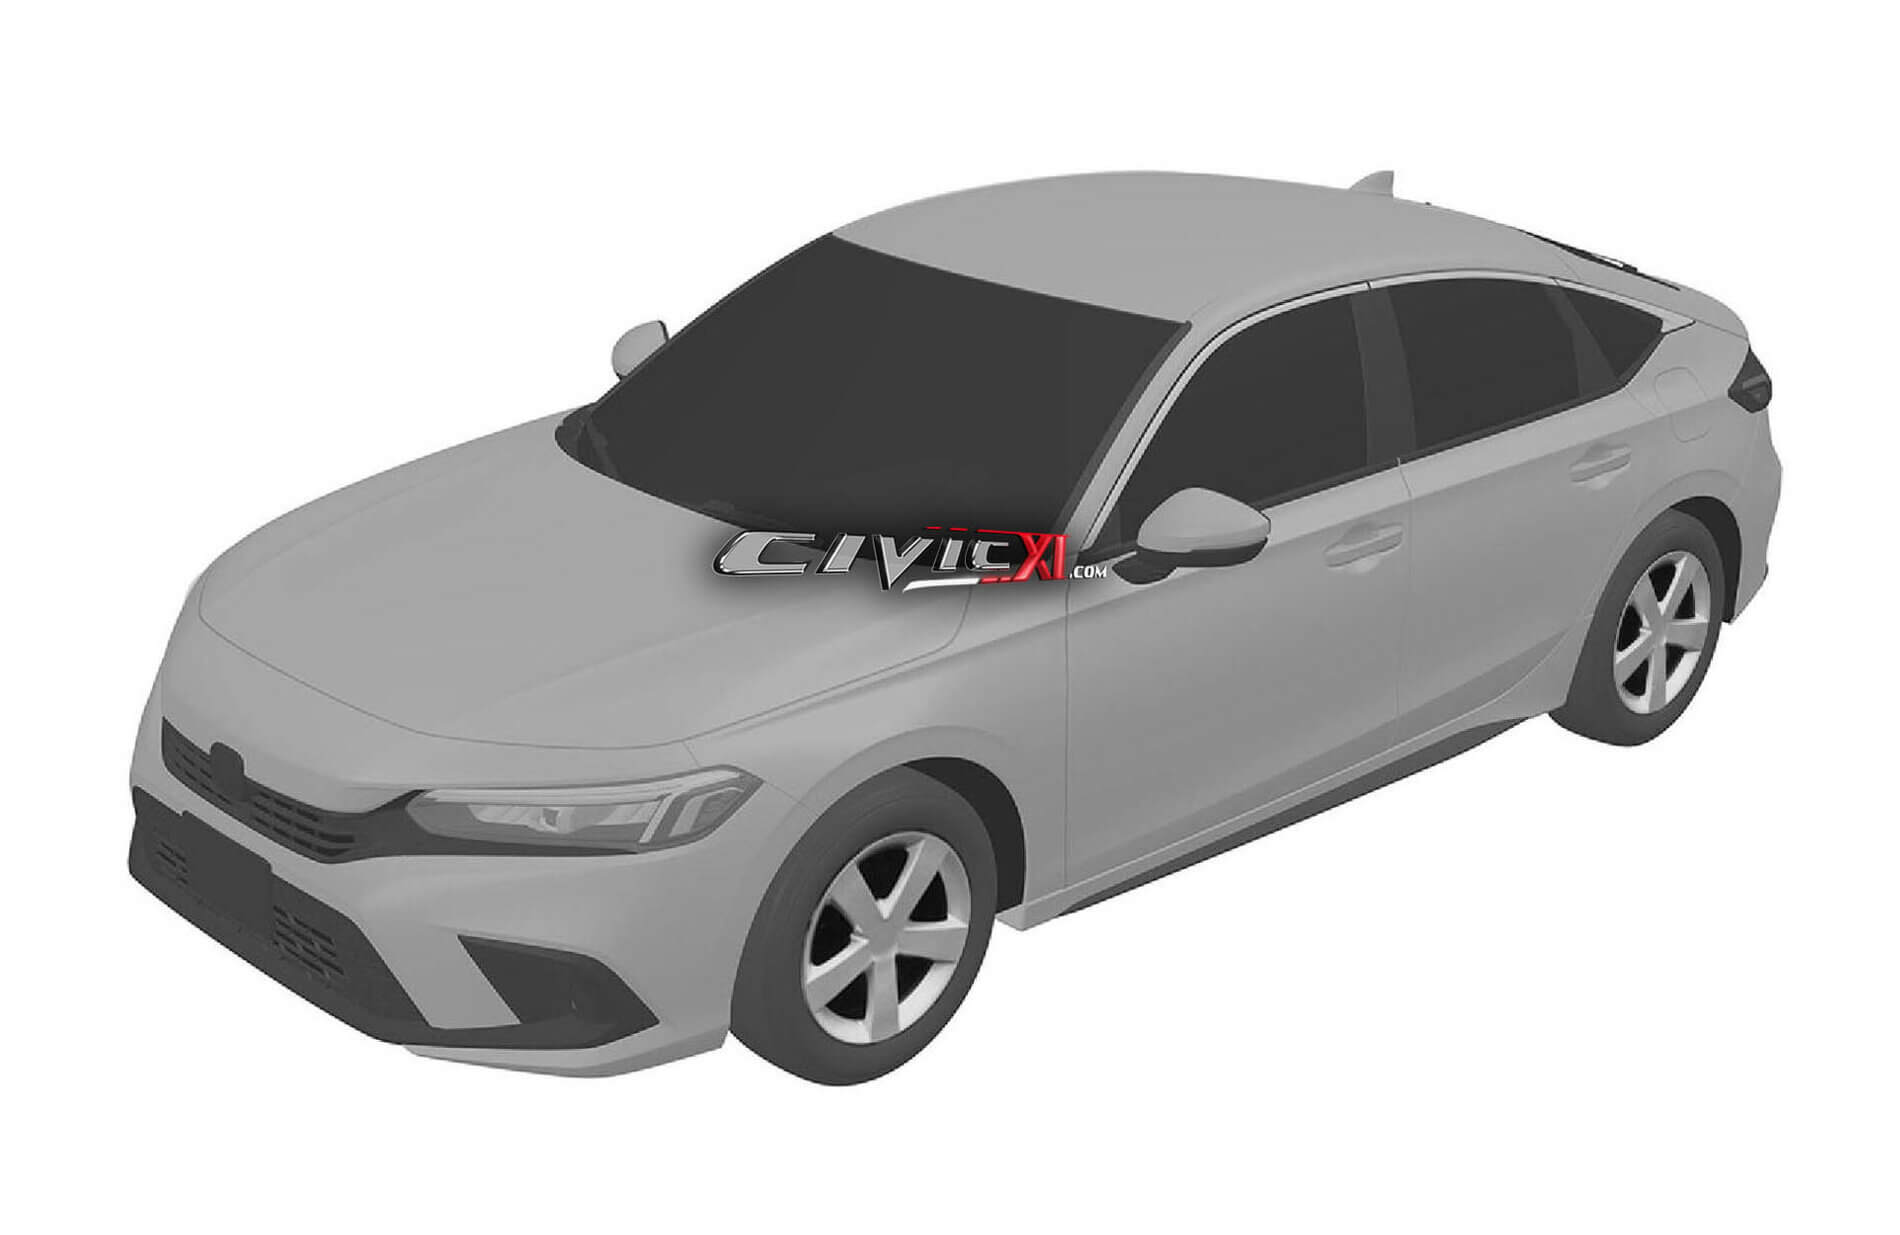 2021 Honda Civic Sedan Yeni Tasarımı Ortaya Çıktı